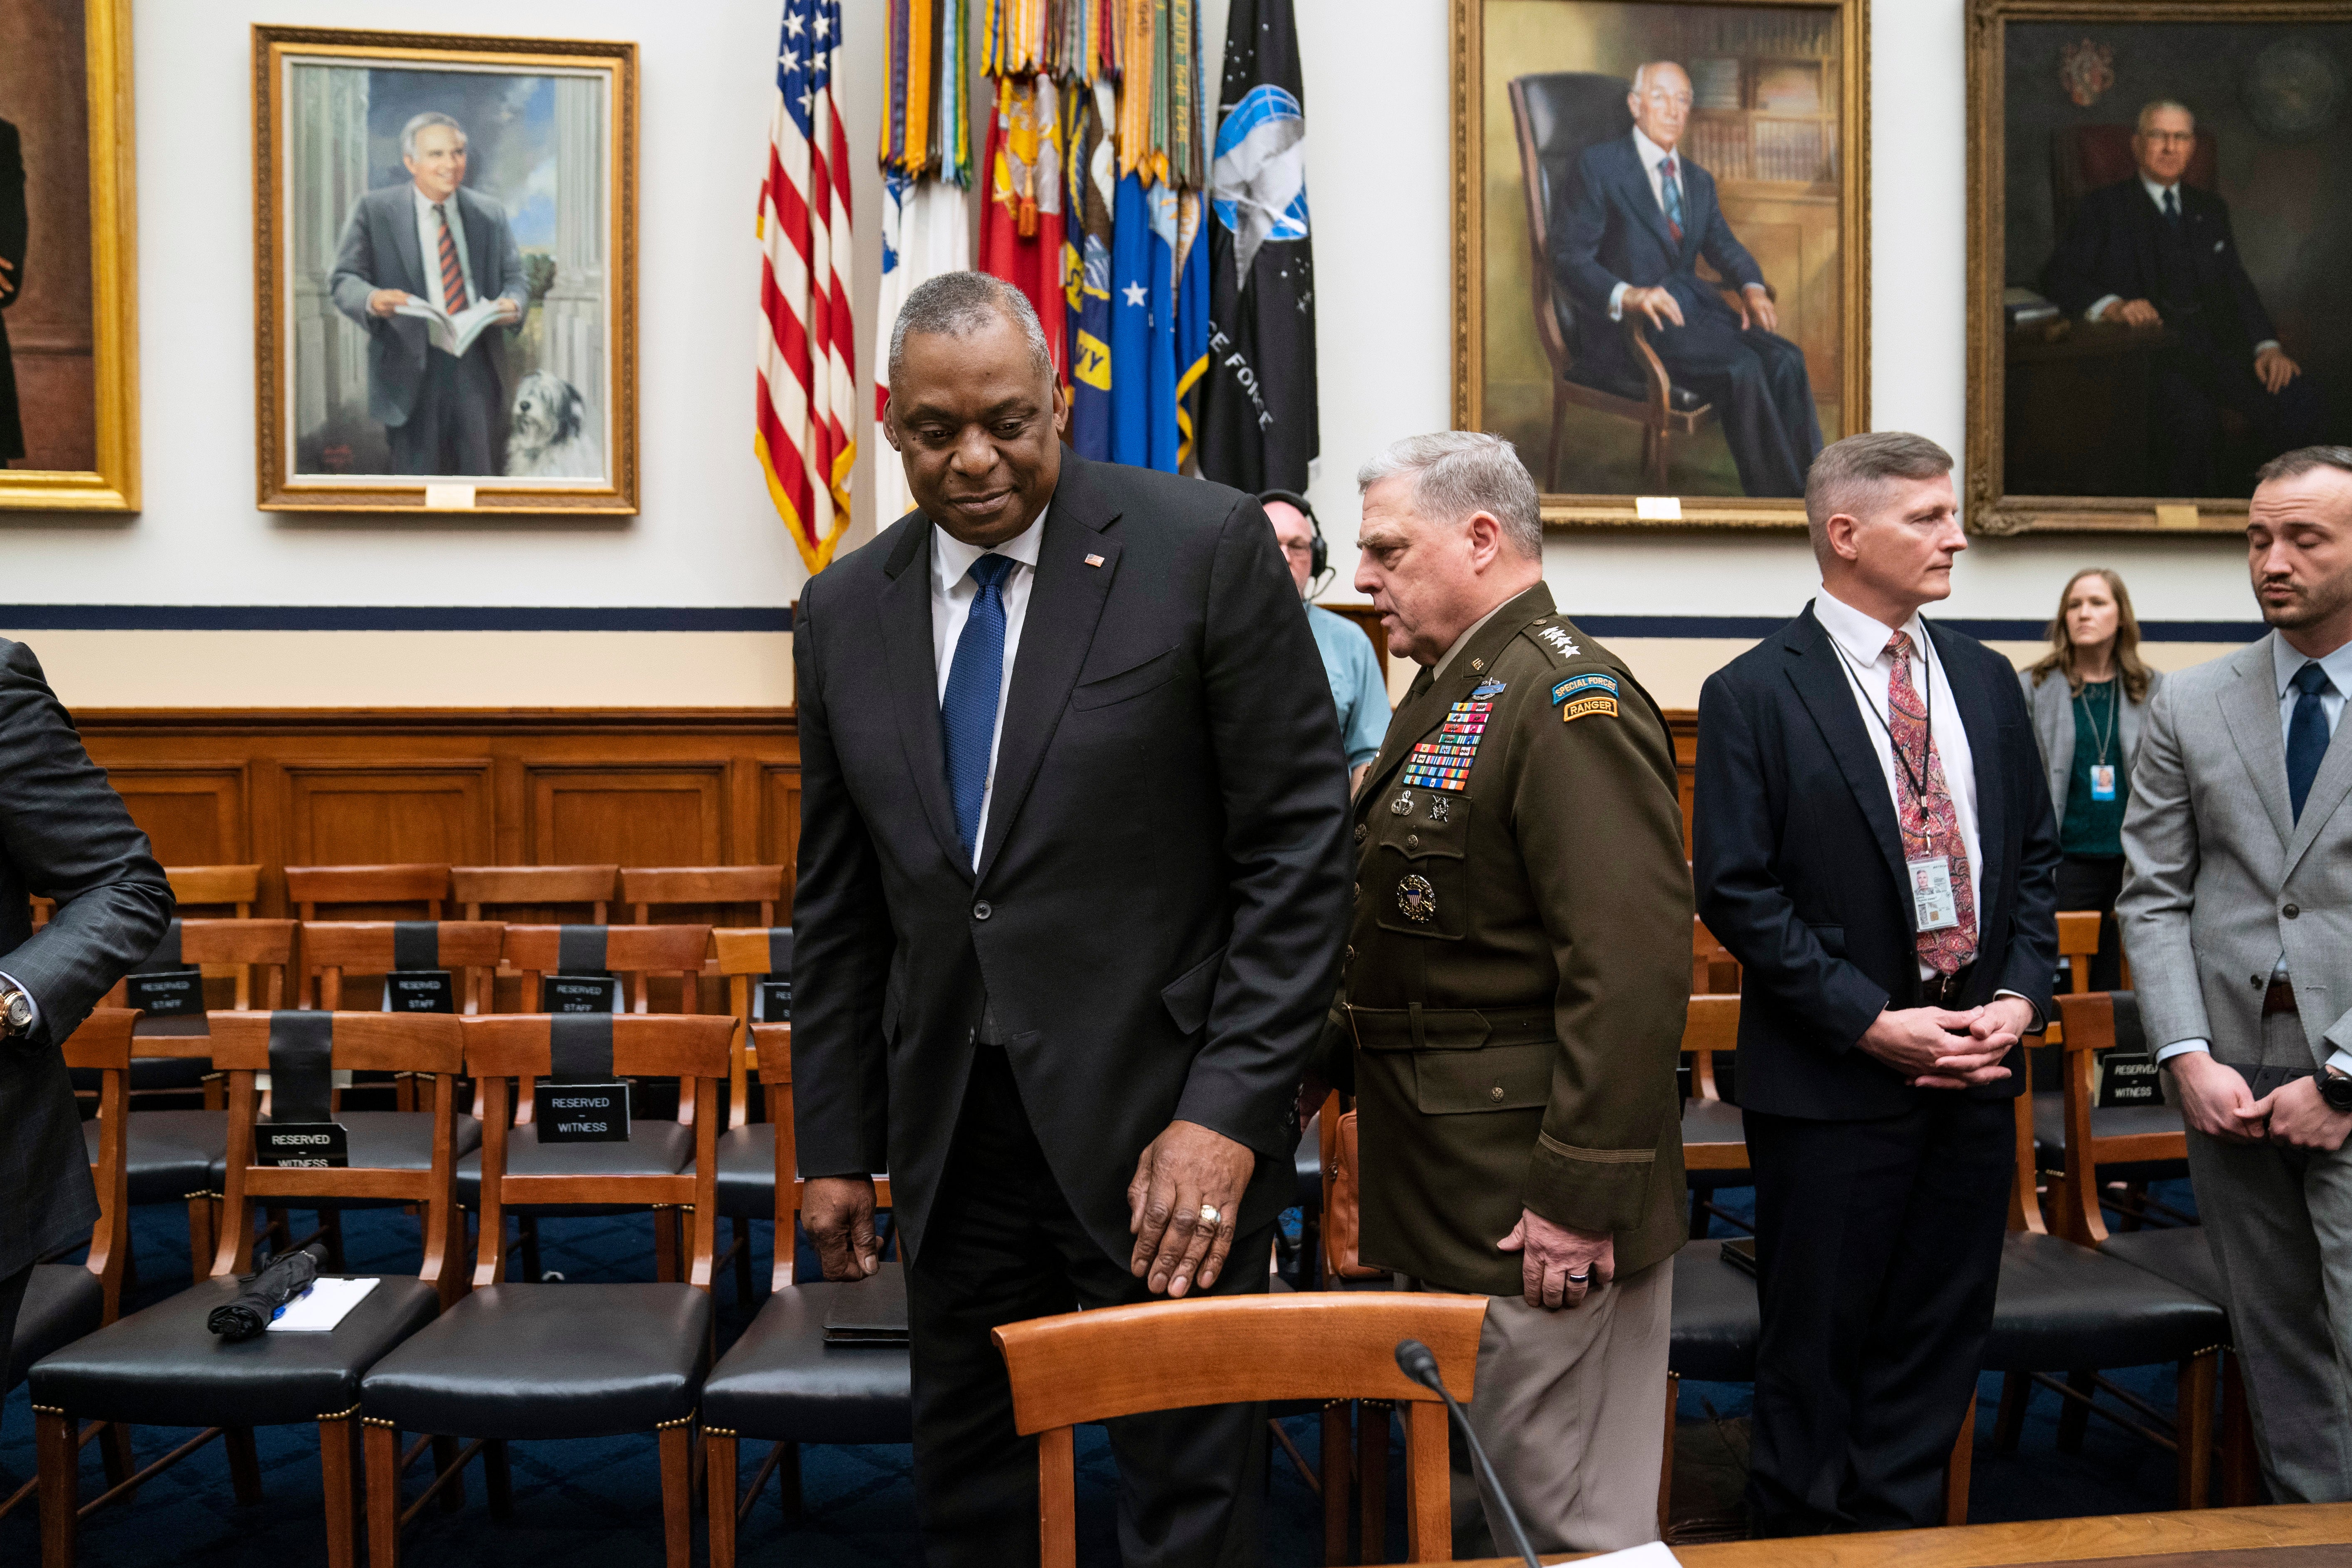 El intercambio se dio durante la aprobación del presupuesto para defensa en la Cámara de Representantes de EE.UU.